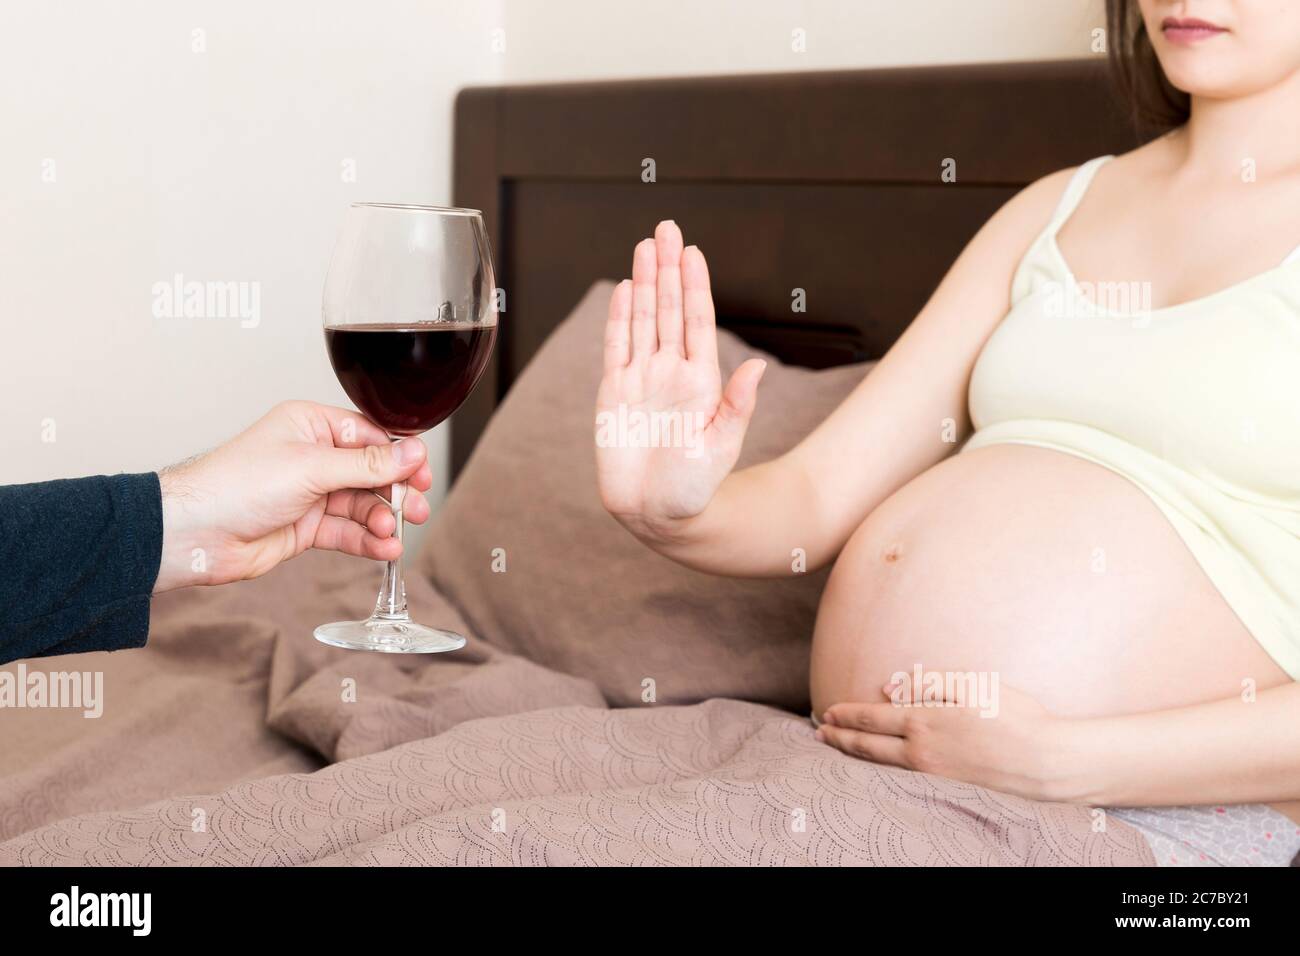 Gros plan de la femme enceinte qui reste au lit refuse de boire du vin et  fait un geste d'arrêt au verre. Pas d'alcool pendant la grossesse concept  Photo Stock - Alamy